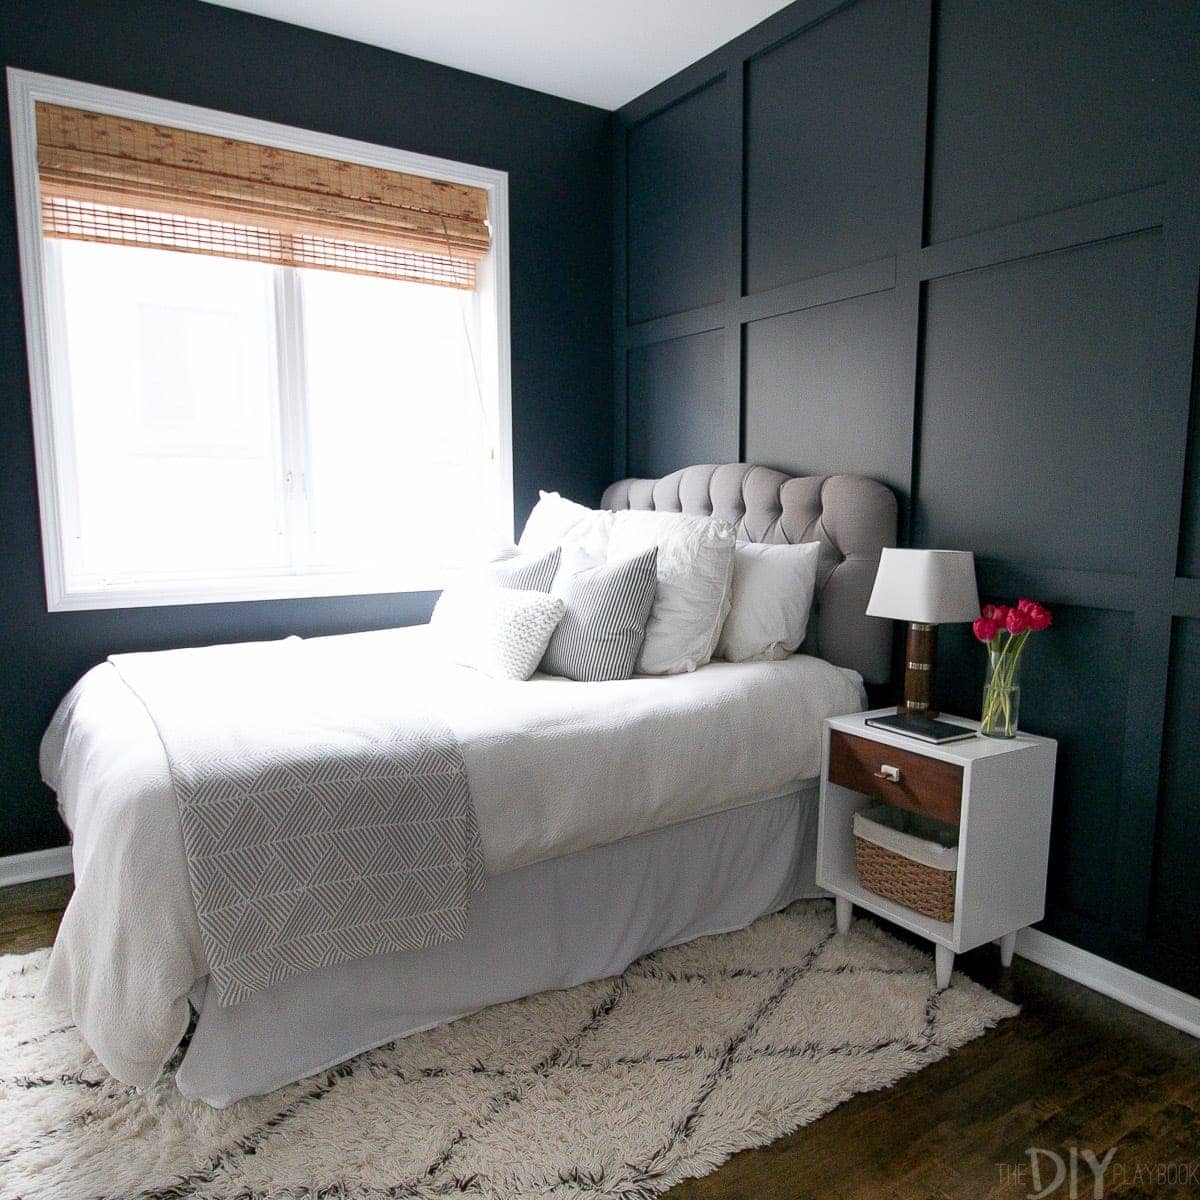 Adicione um tratamento de parede de madeira atrás de sua cama